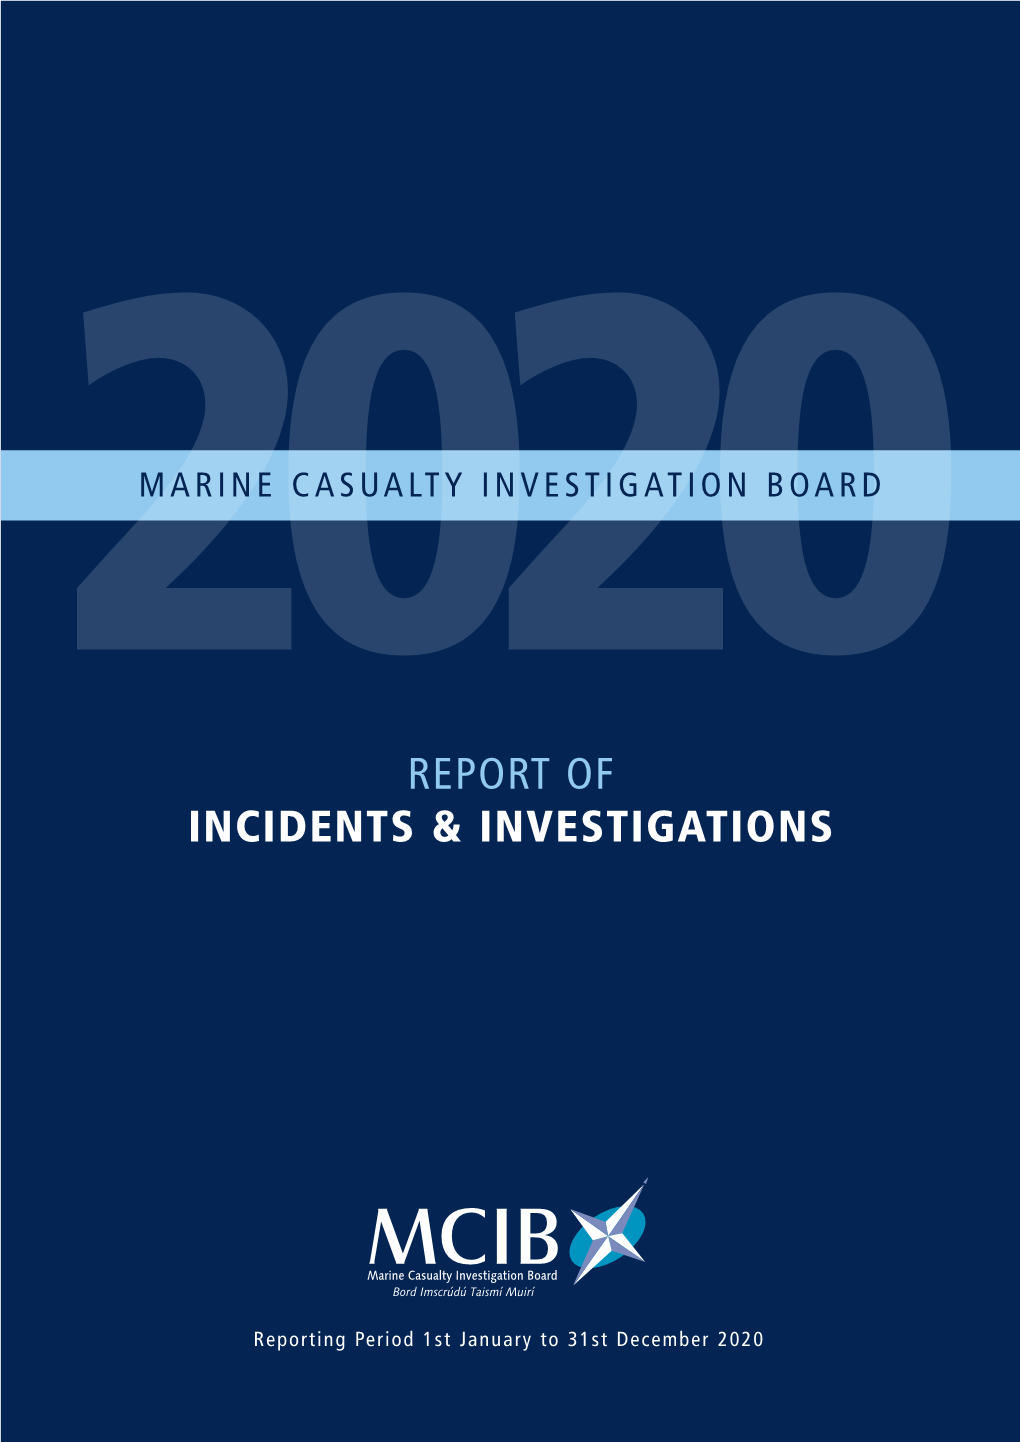 MCIB 2020 Incidents & Investigations